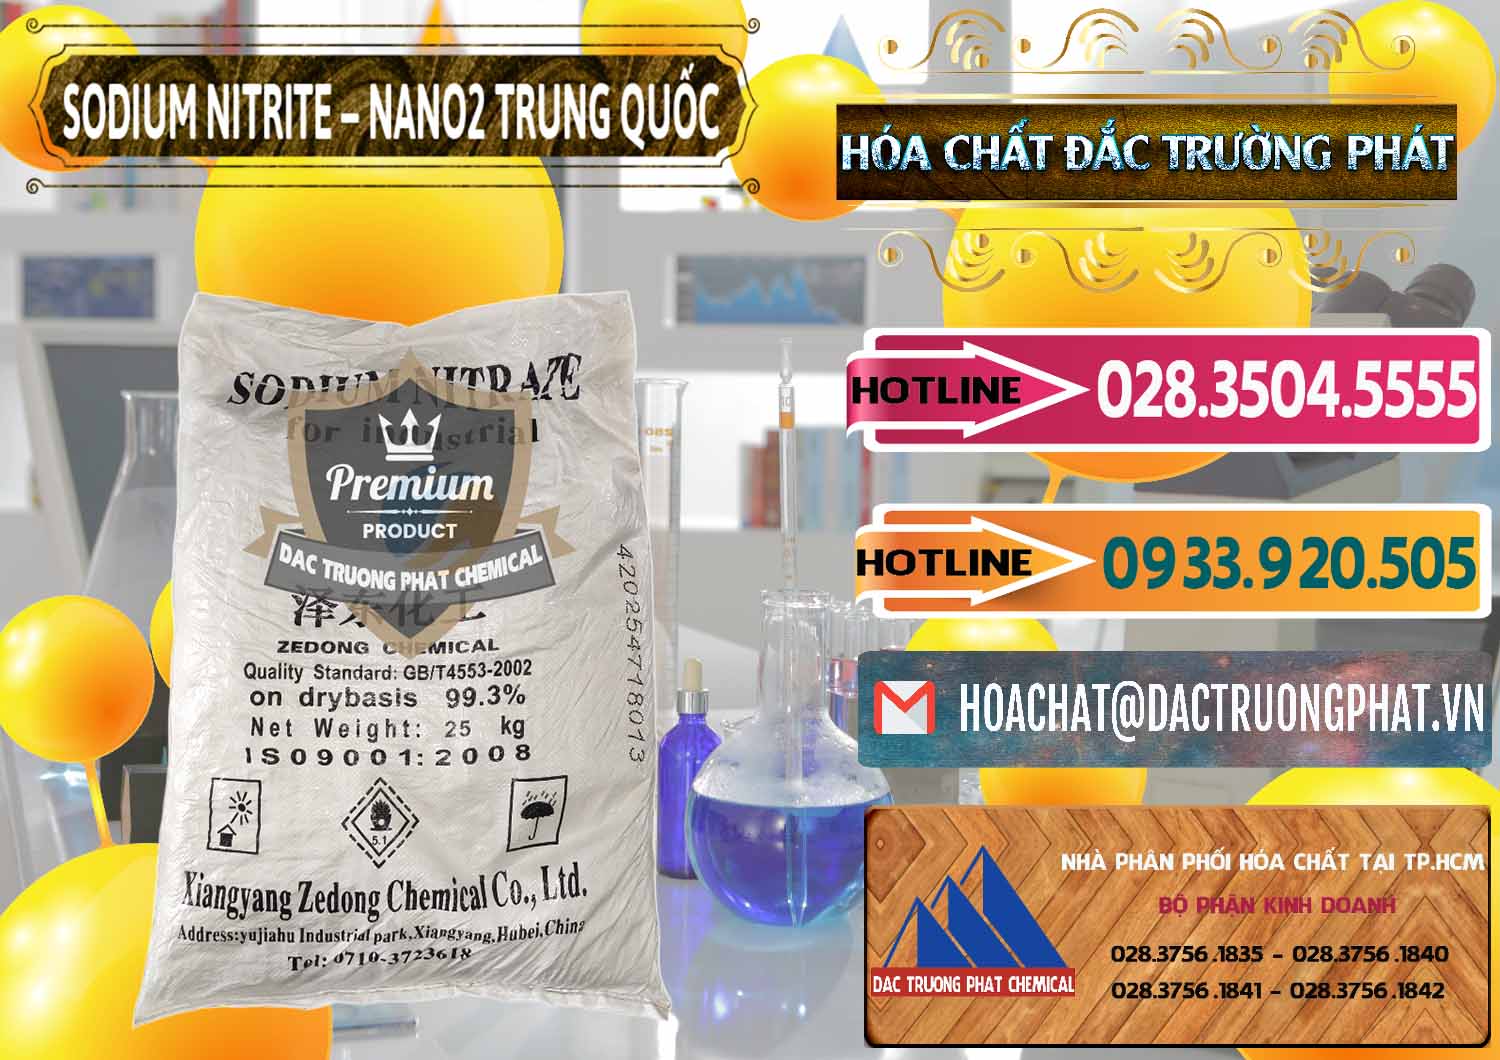 Đơn vị nhập khẩu & bán Sodium Nitrite - NANO2 Zedong Trung Quốc China - 0149 - Chuyên bán _ phân phối hóa chất tại TP.HCM - dactruongphat.vn